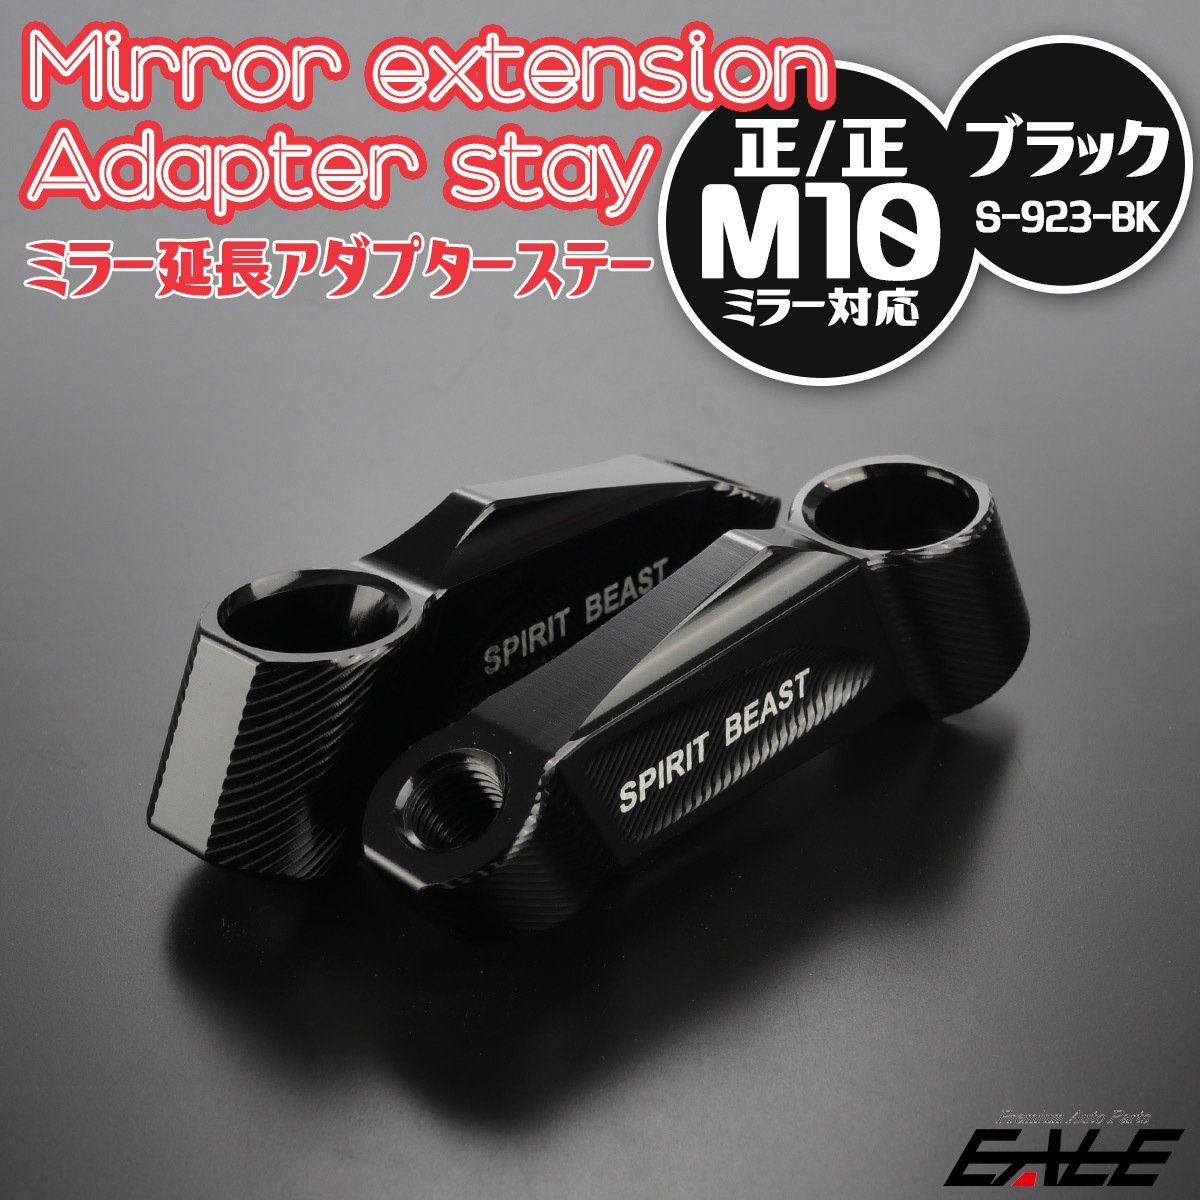  all-purpose mirror extension adaptor M10 regular screw /M10 regular screw black anodized aluminum left right set T6 aluminium shaving (formation process during milling) S-923BK